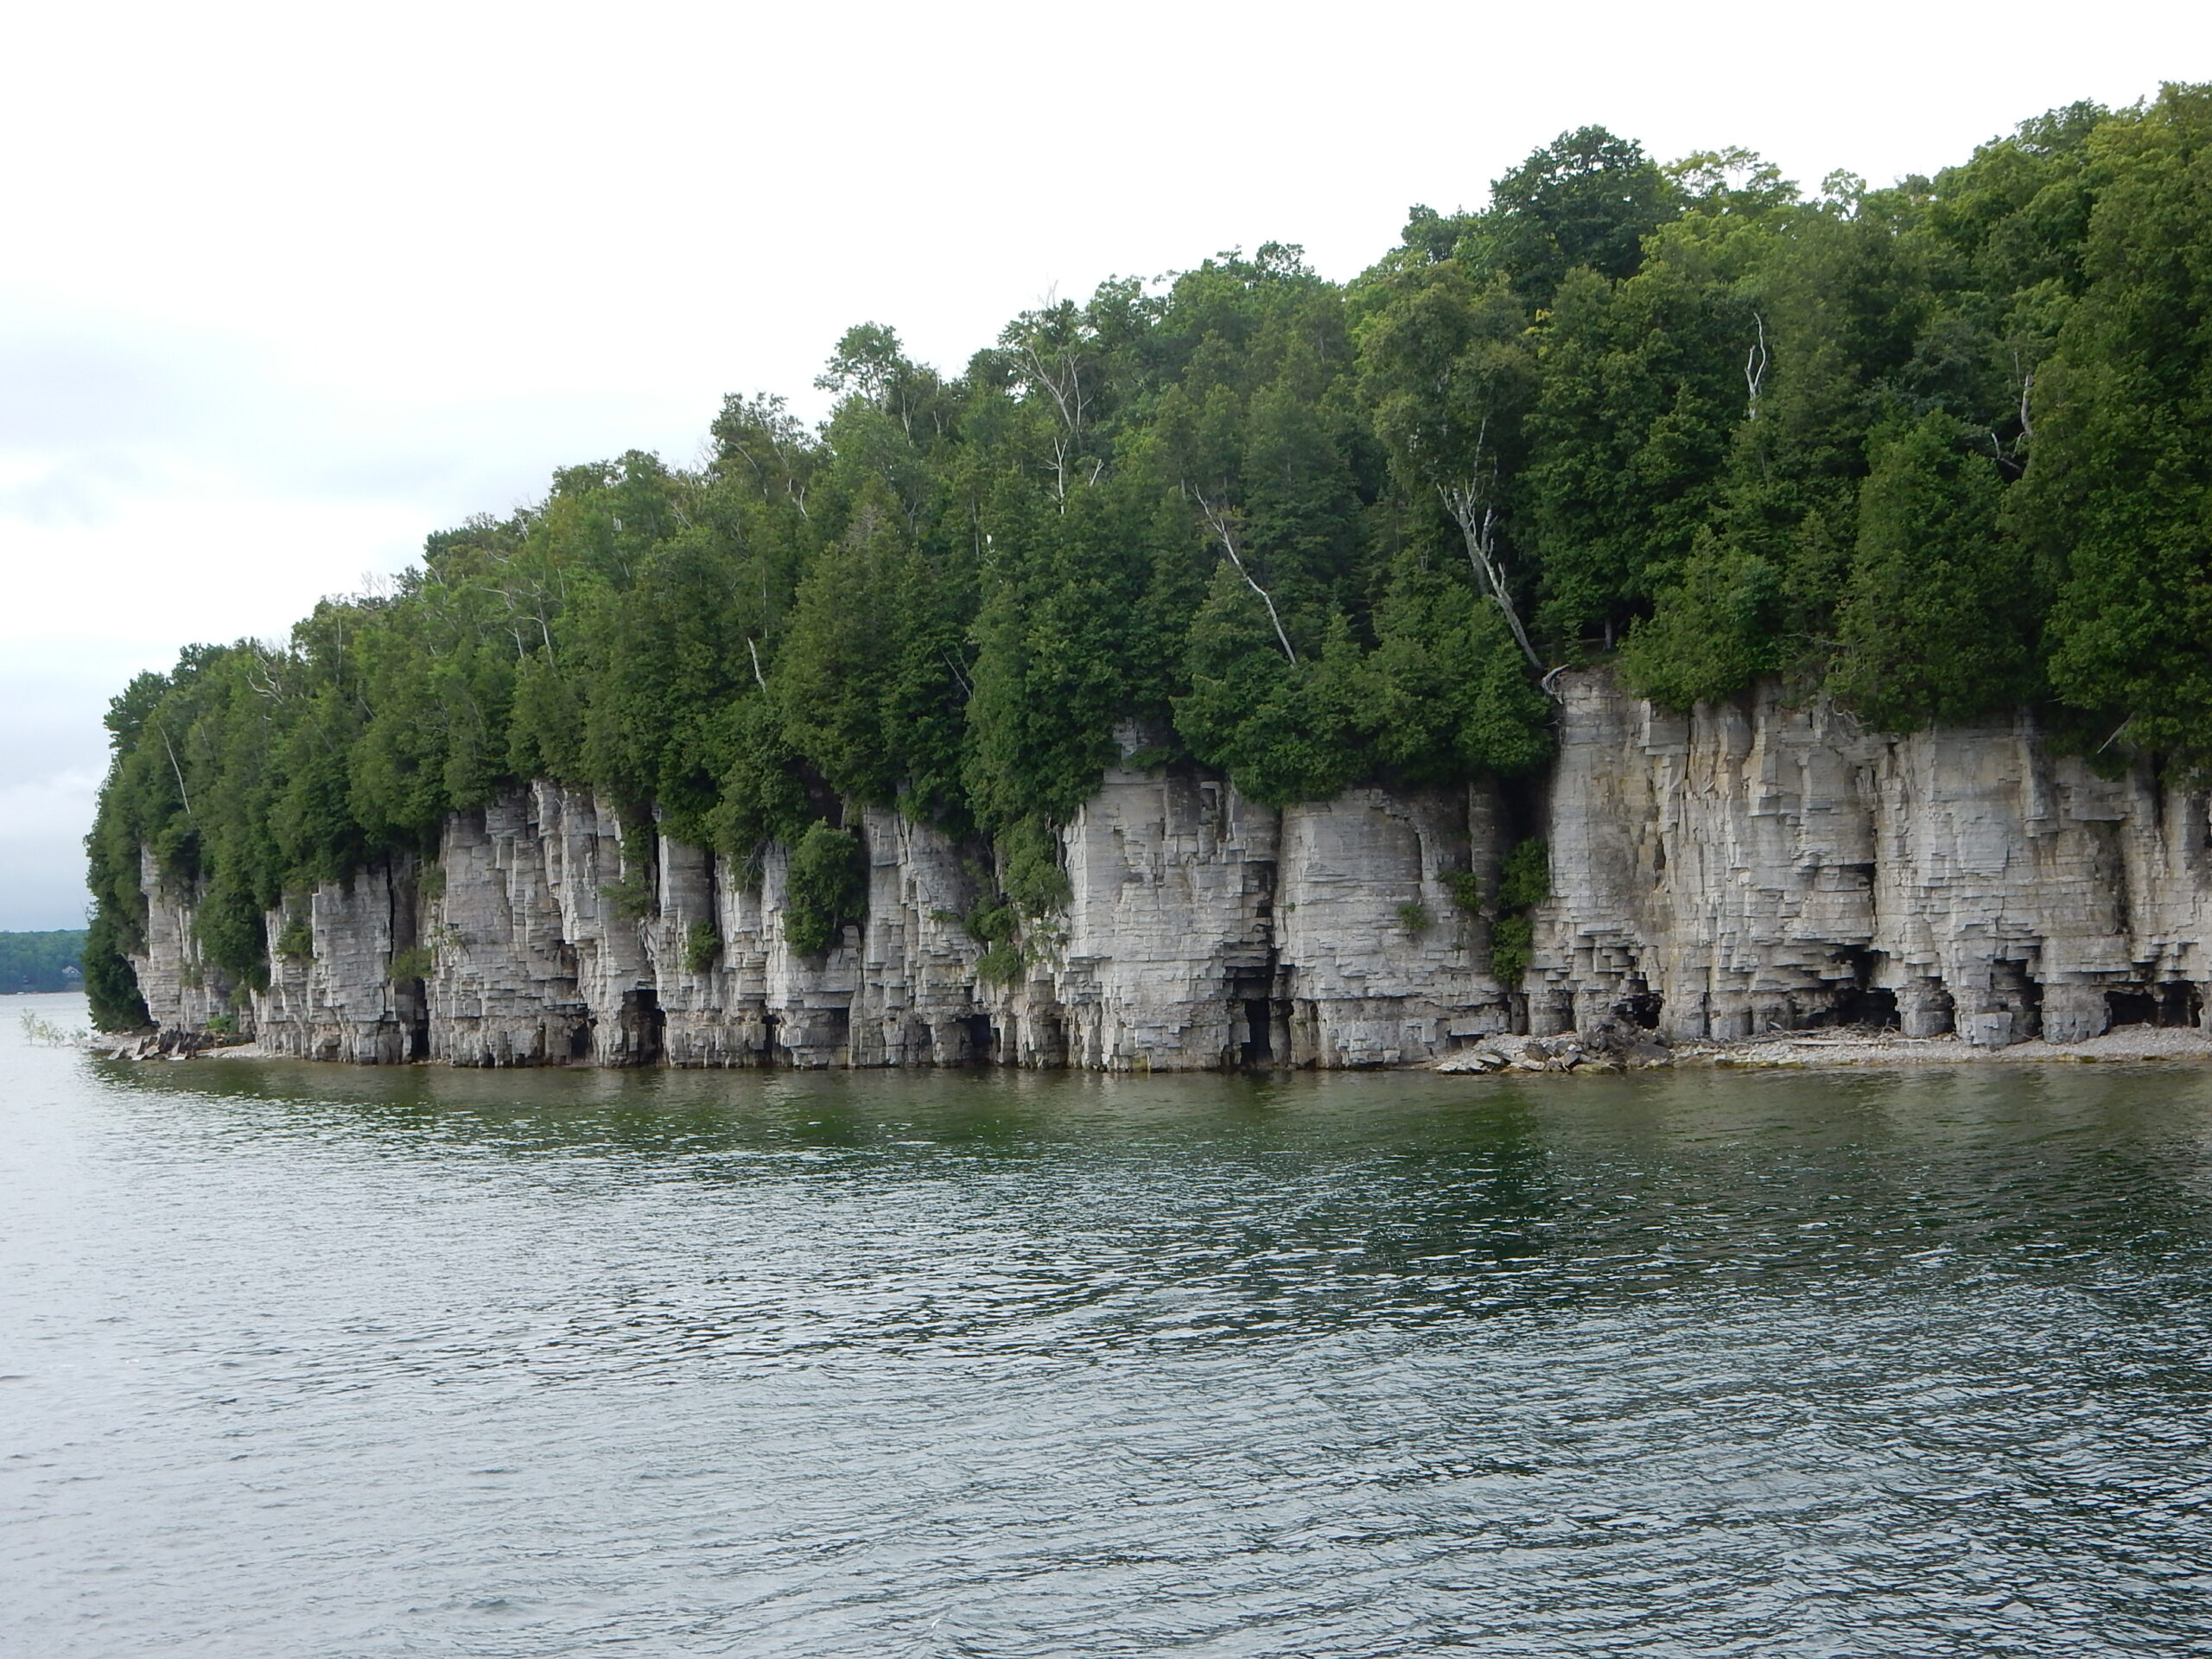 Cliff face of the Wisconsin Niagara Escarpment